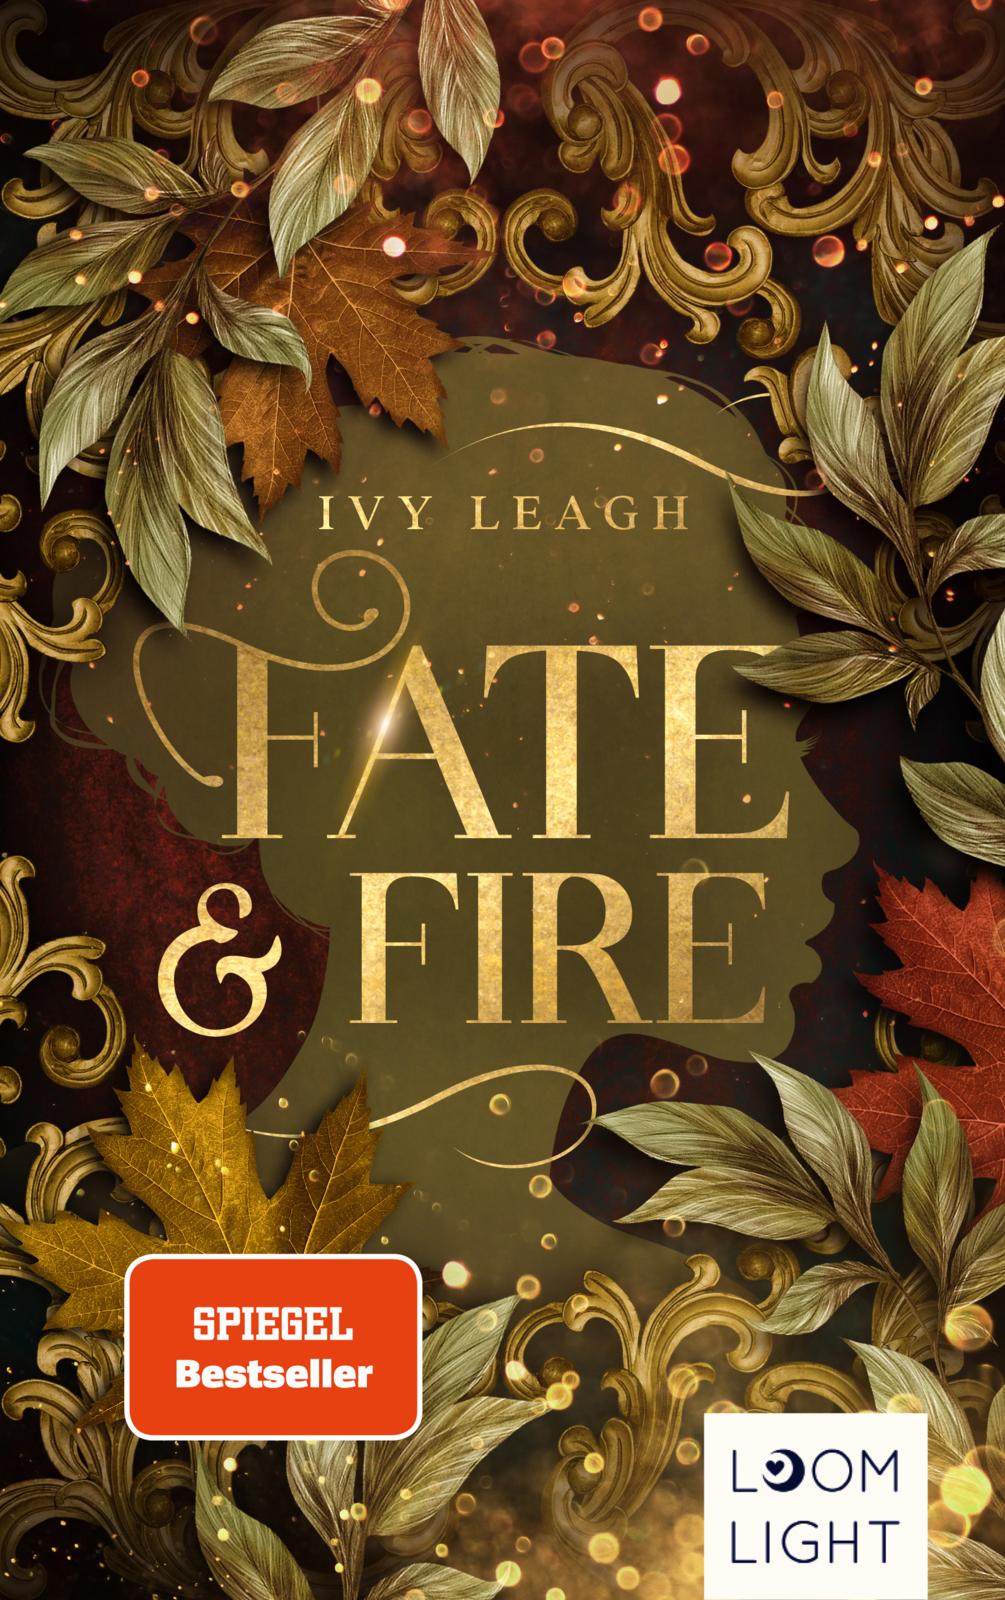 Bücherblog. Neuerscheinungen. Buchcover. Fate and Fire (Band 1) von Ivy Leagh. Fantasy. Jugendbuch. Loomlight.